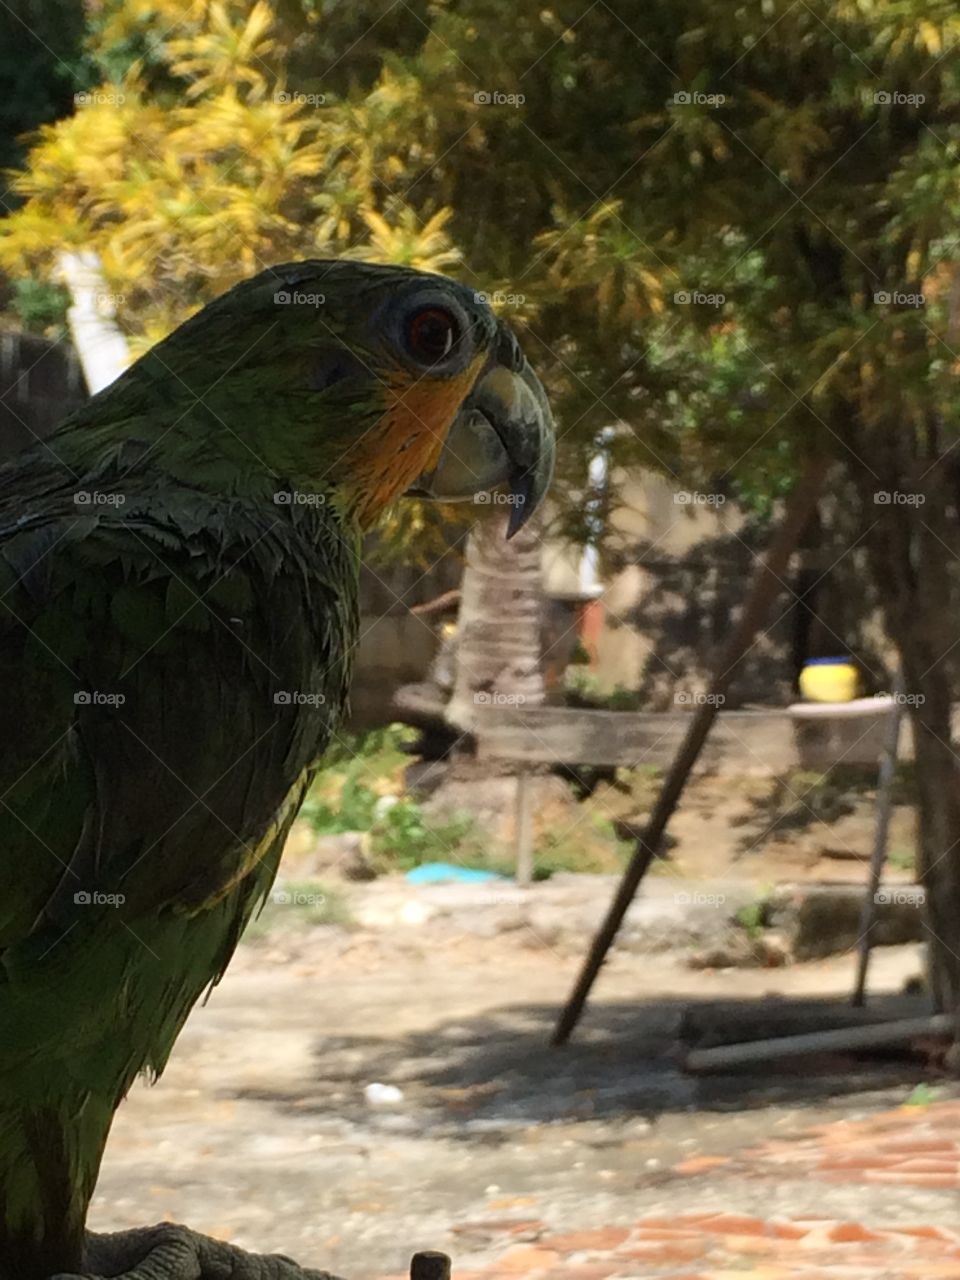 Parrot looking 